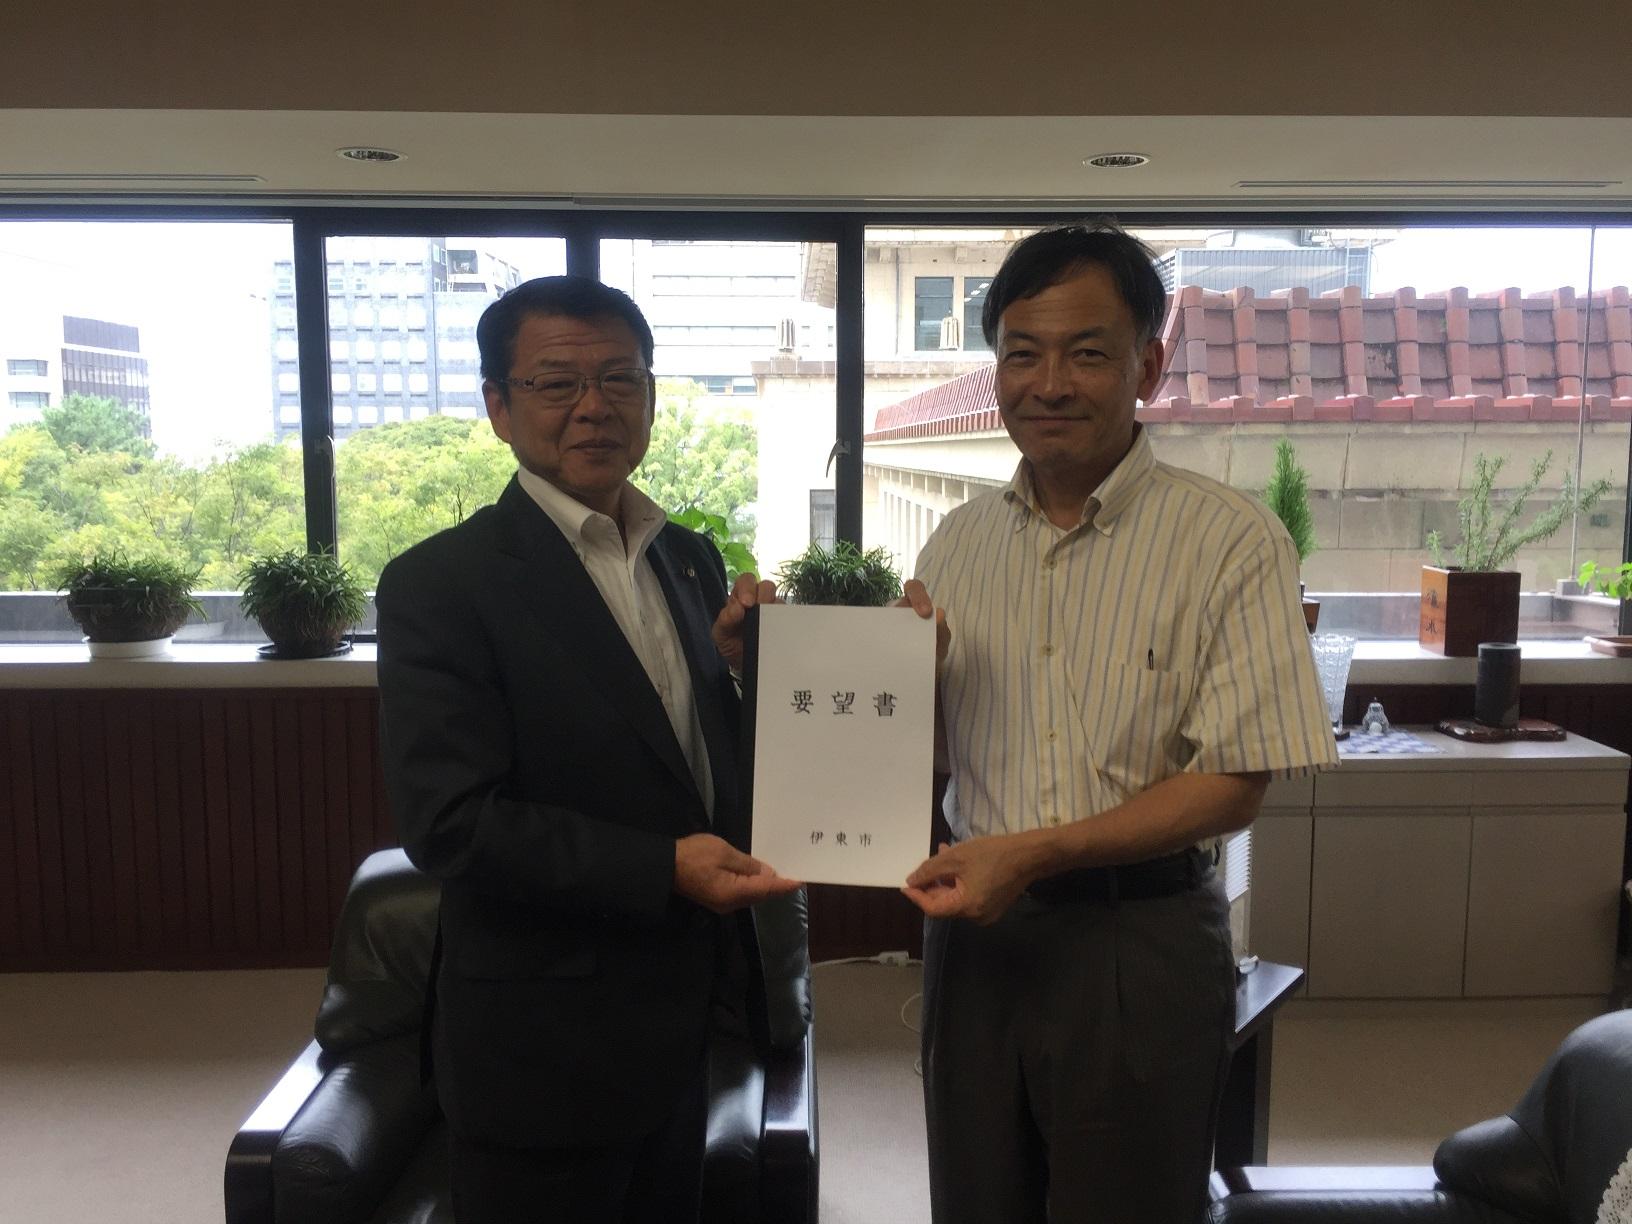 2018年9月4日 伊東市からの要望書を手渡しする伊東市長と受け取る難波副知事の写真